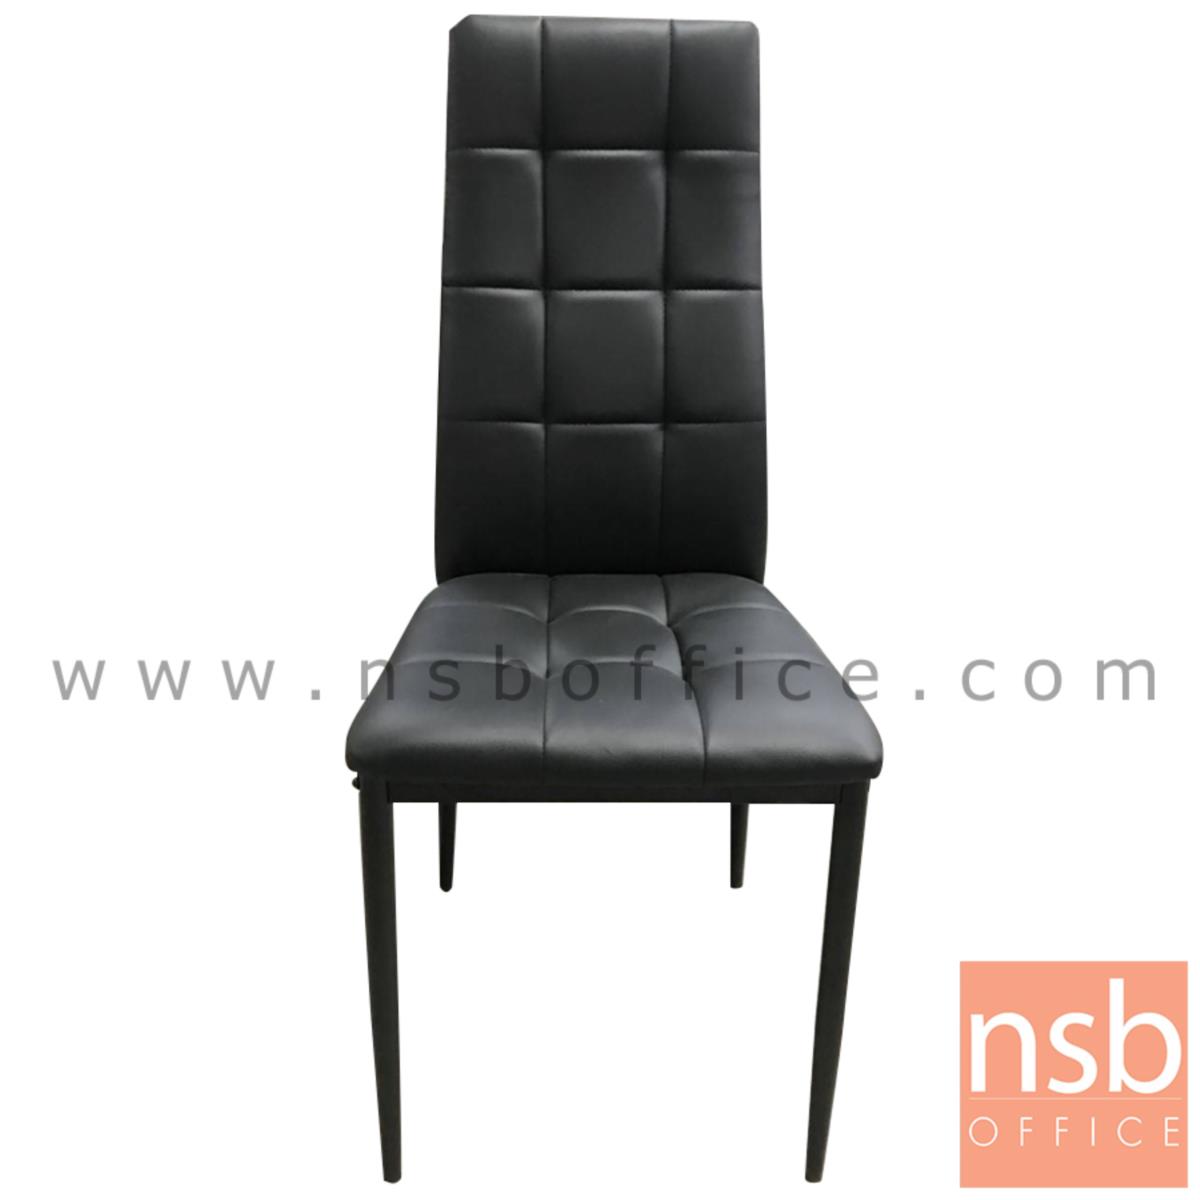 B22A189:เก้าอี้รับประทานอาหาร หุ้มหนังสีดำ รุ่น Nashville (แนชวิลล์)  ขาเหล็กดำ